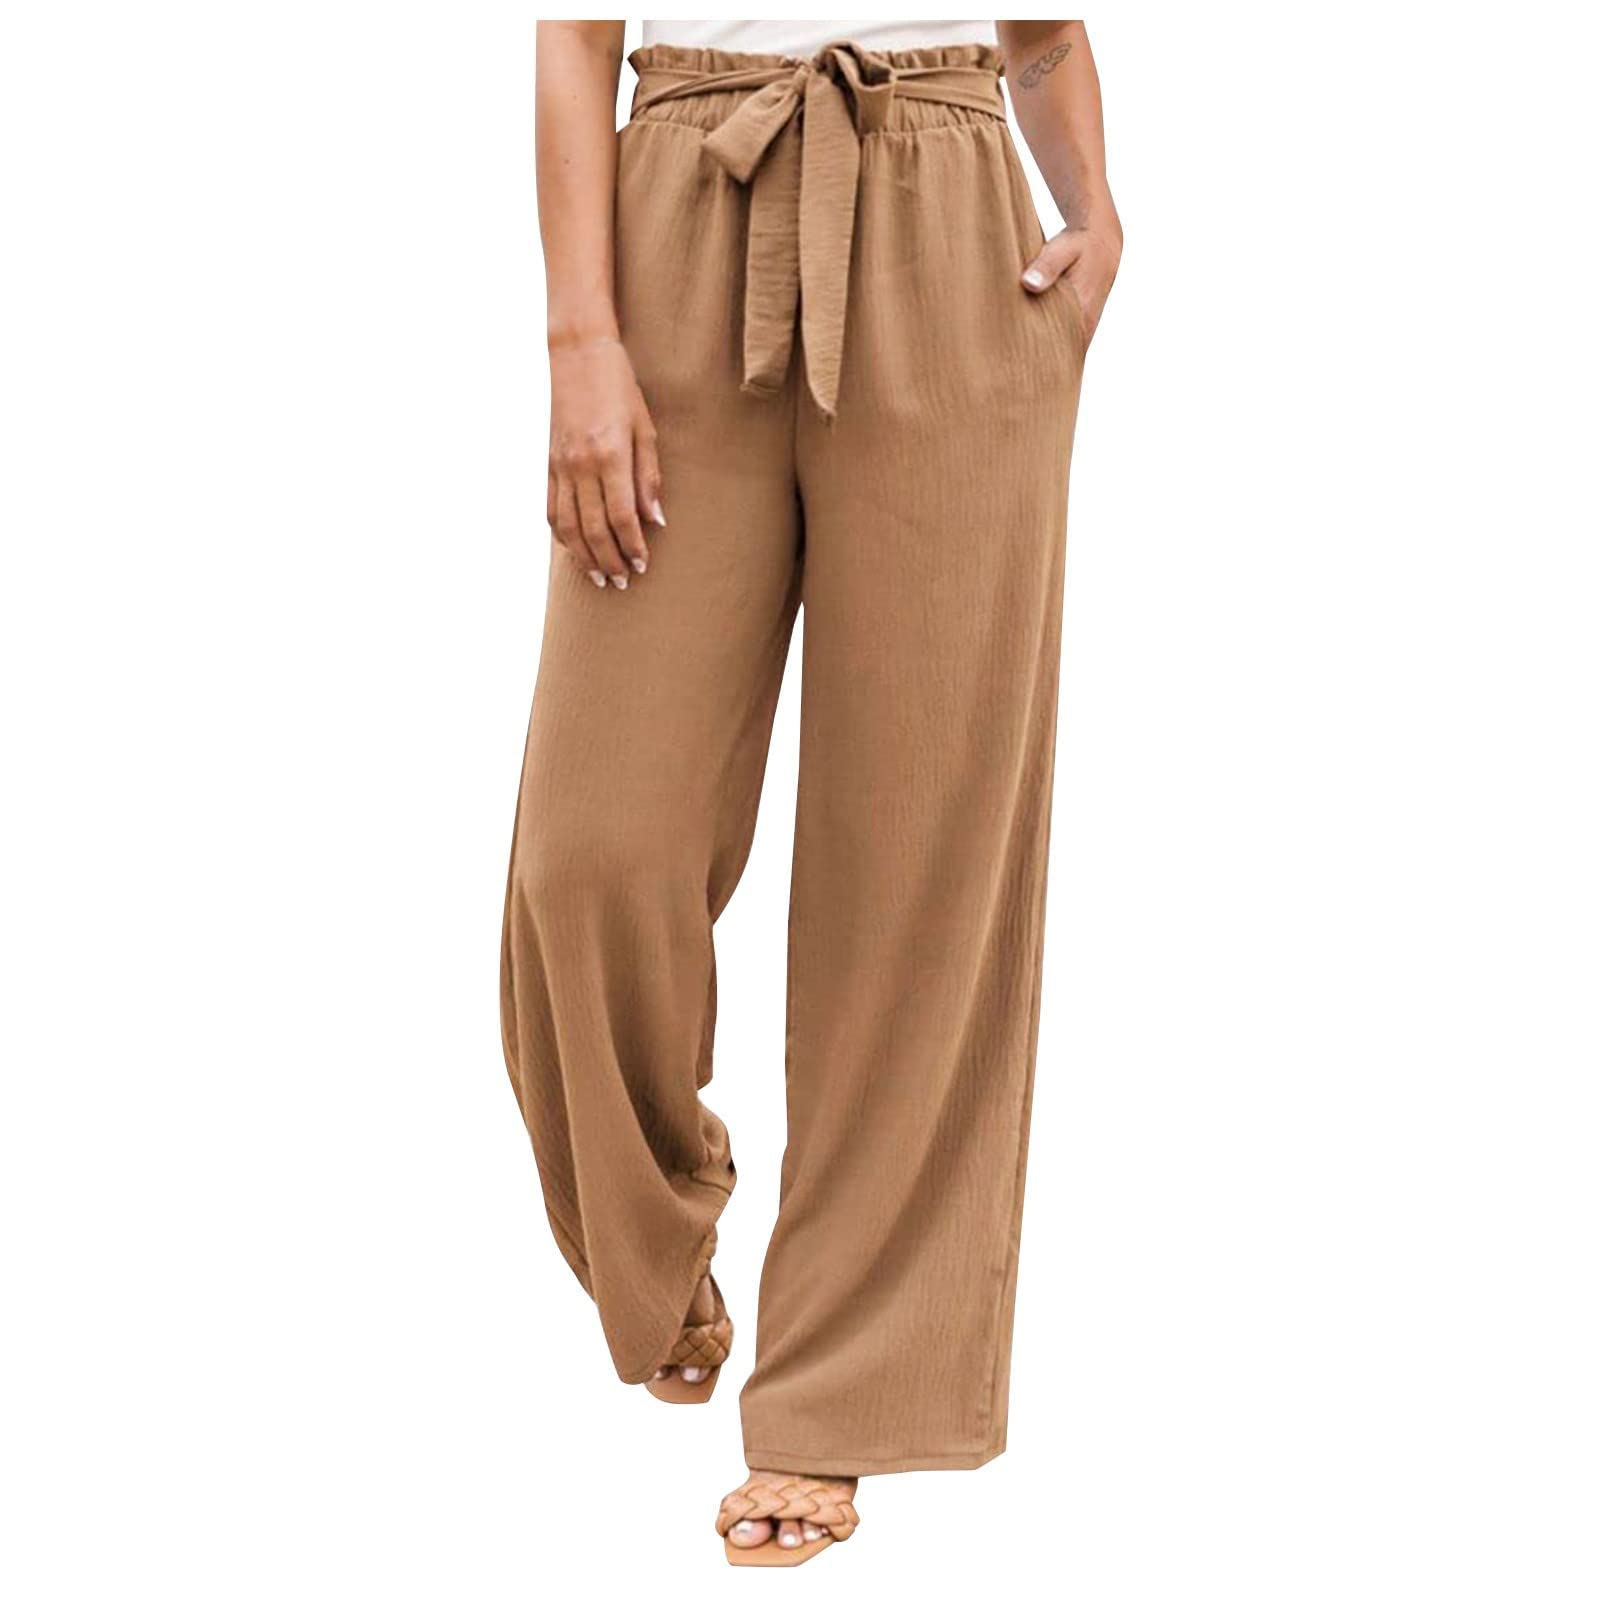 Black Cotton Silk Side Zip Pant | Cotton Pants for Women